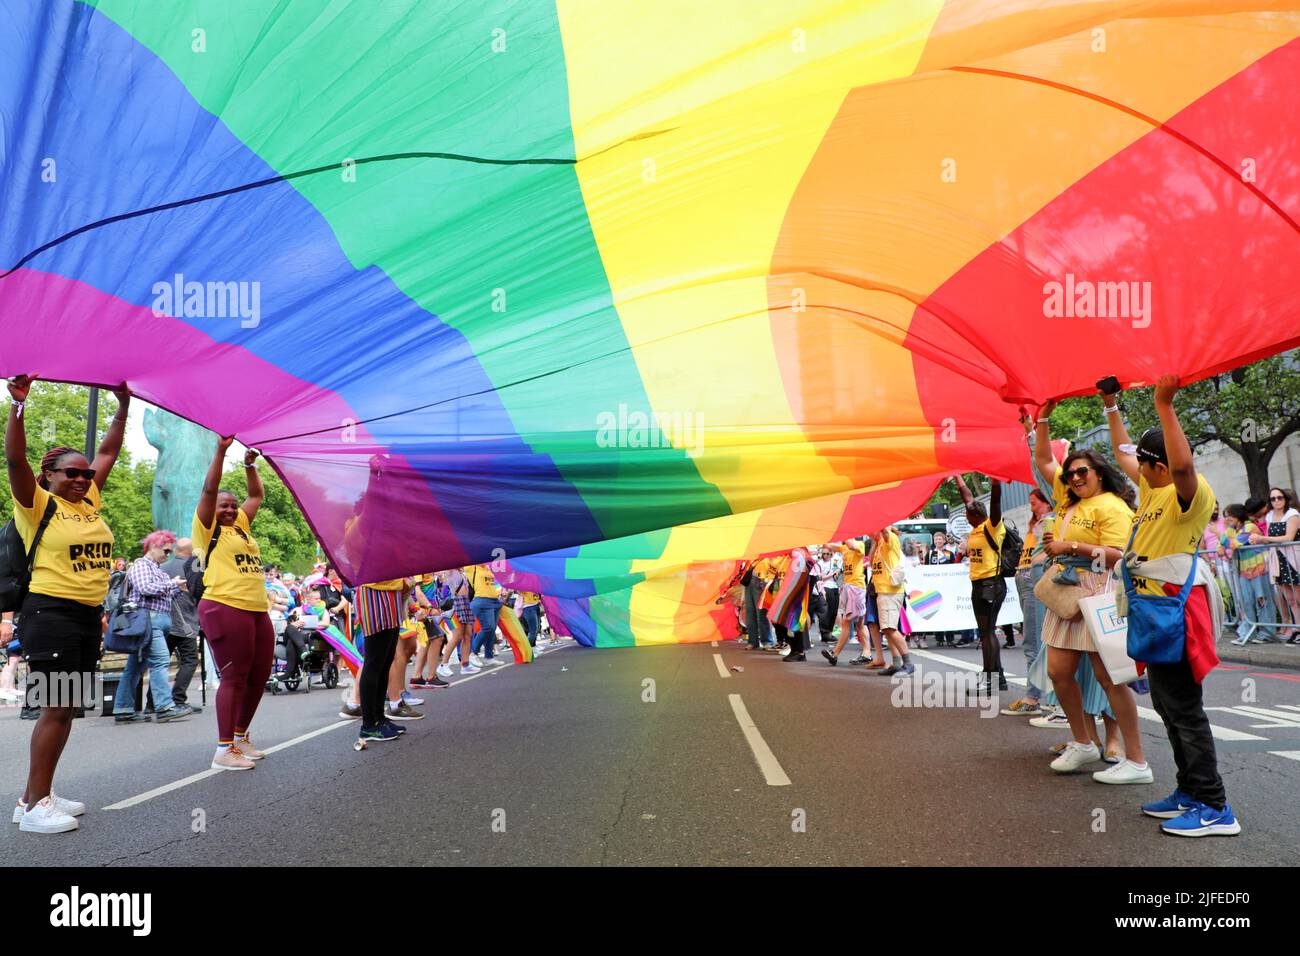 Londres, Reino Unido. 2nd de julio de 2022. Participantes en el Desfile del Orgullo en Londres. Más de 30.000 participantes participaron en el Desfile del Orgullo en Londres, celebrando 50 años de Orgullo y Protesta LGBT. Crédito: Paul Brown/Alamy Live News Foto de stock